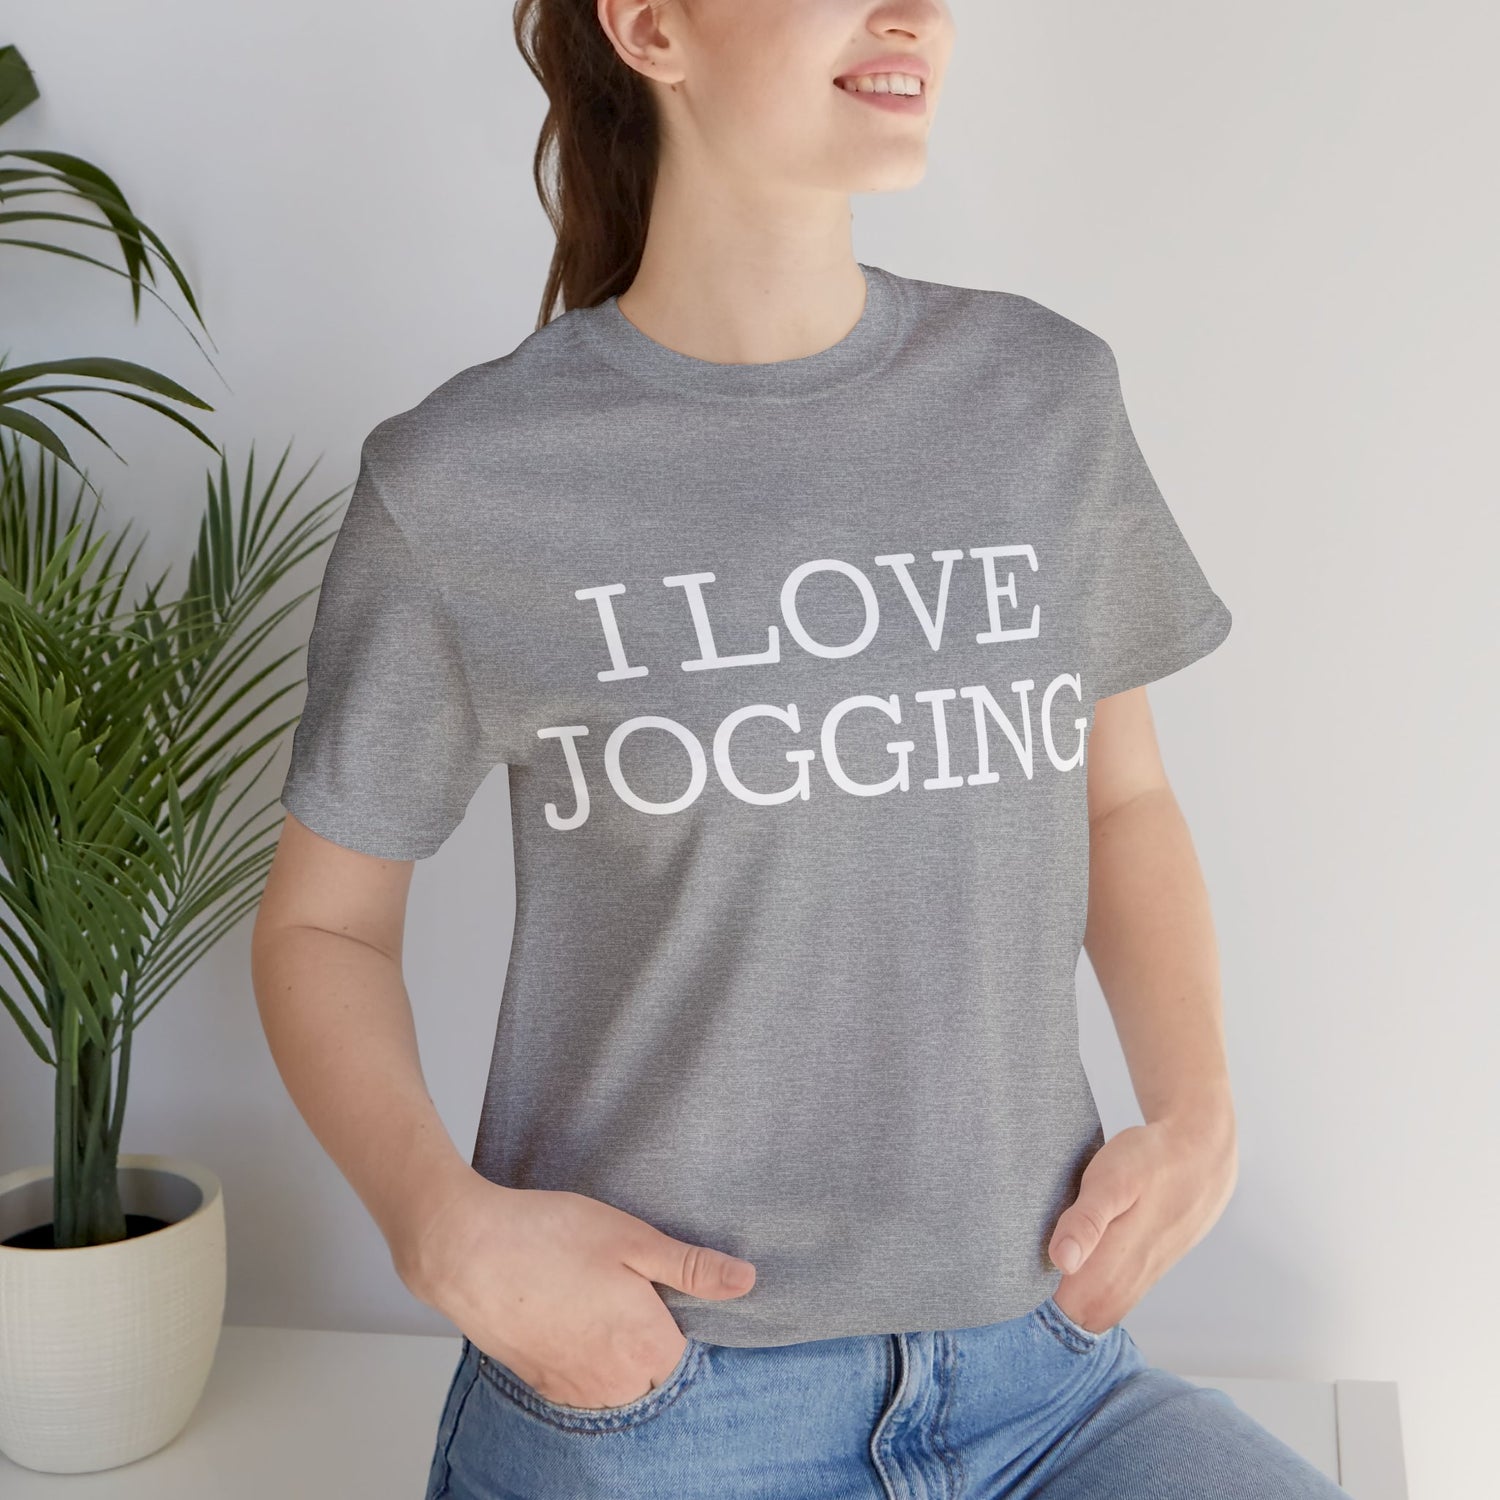 Joggers T-Shirt | Jogger Gift Idea T-Shirt Petrova Designs